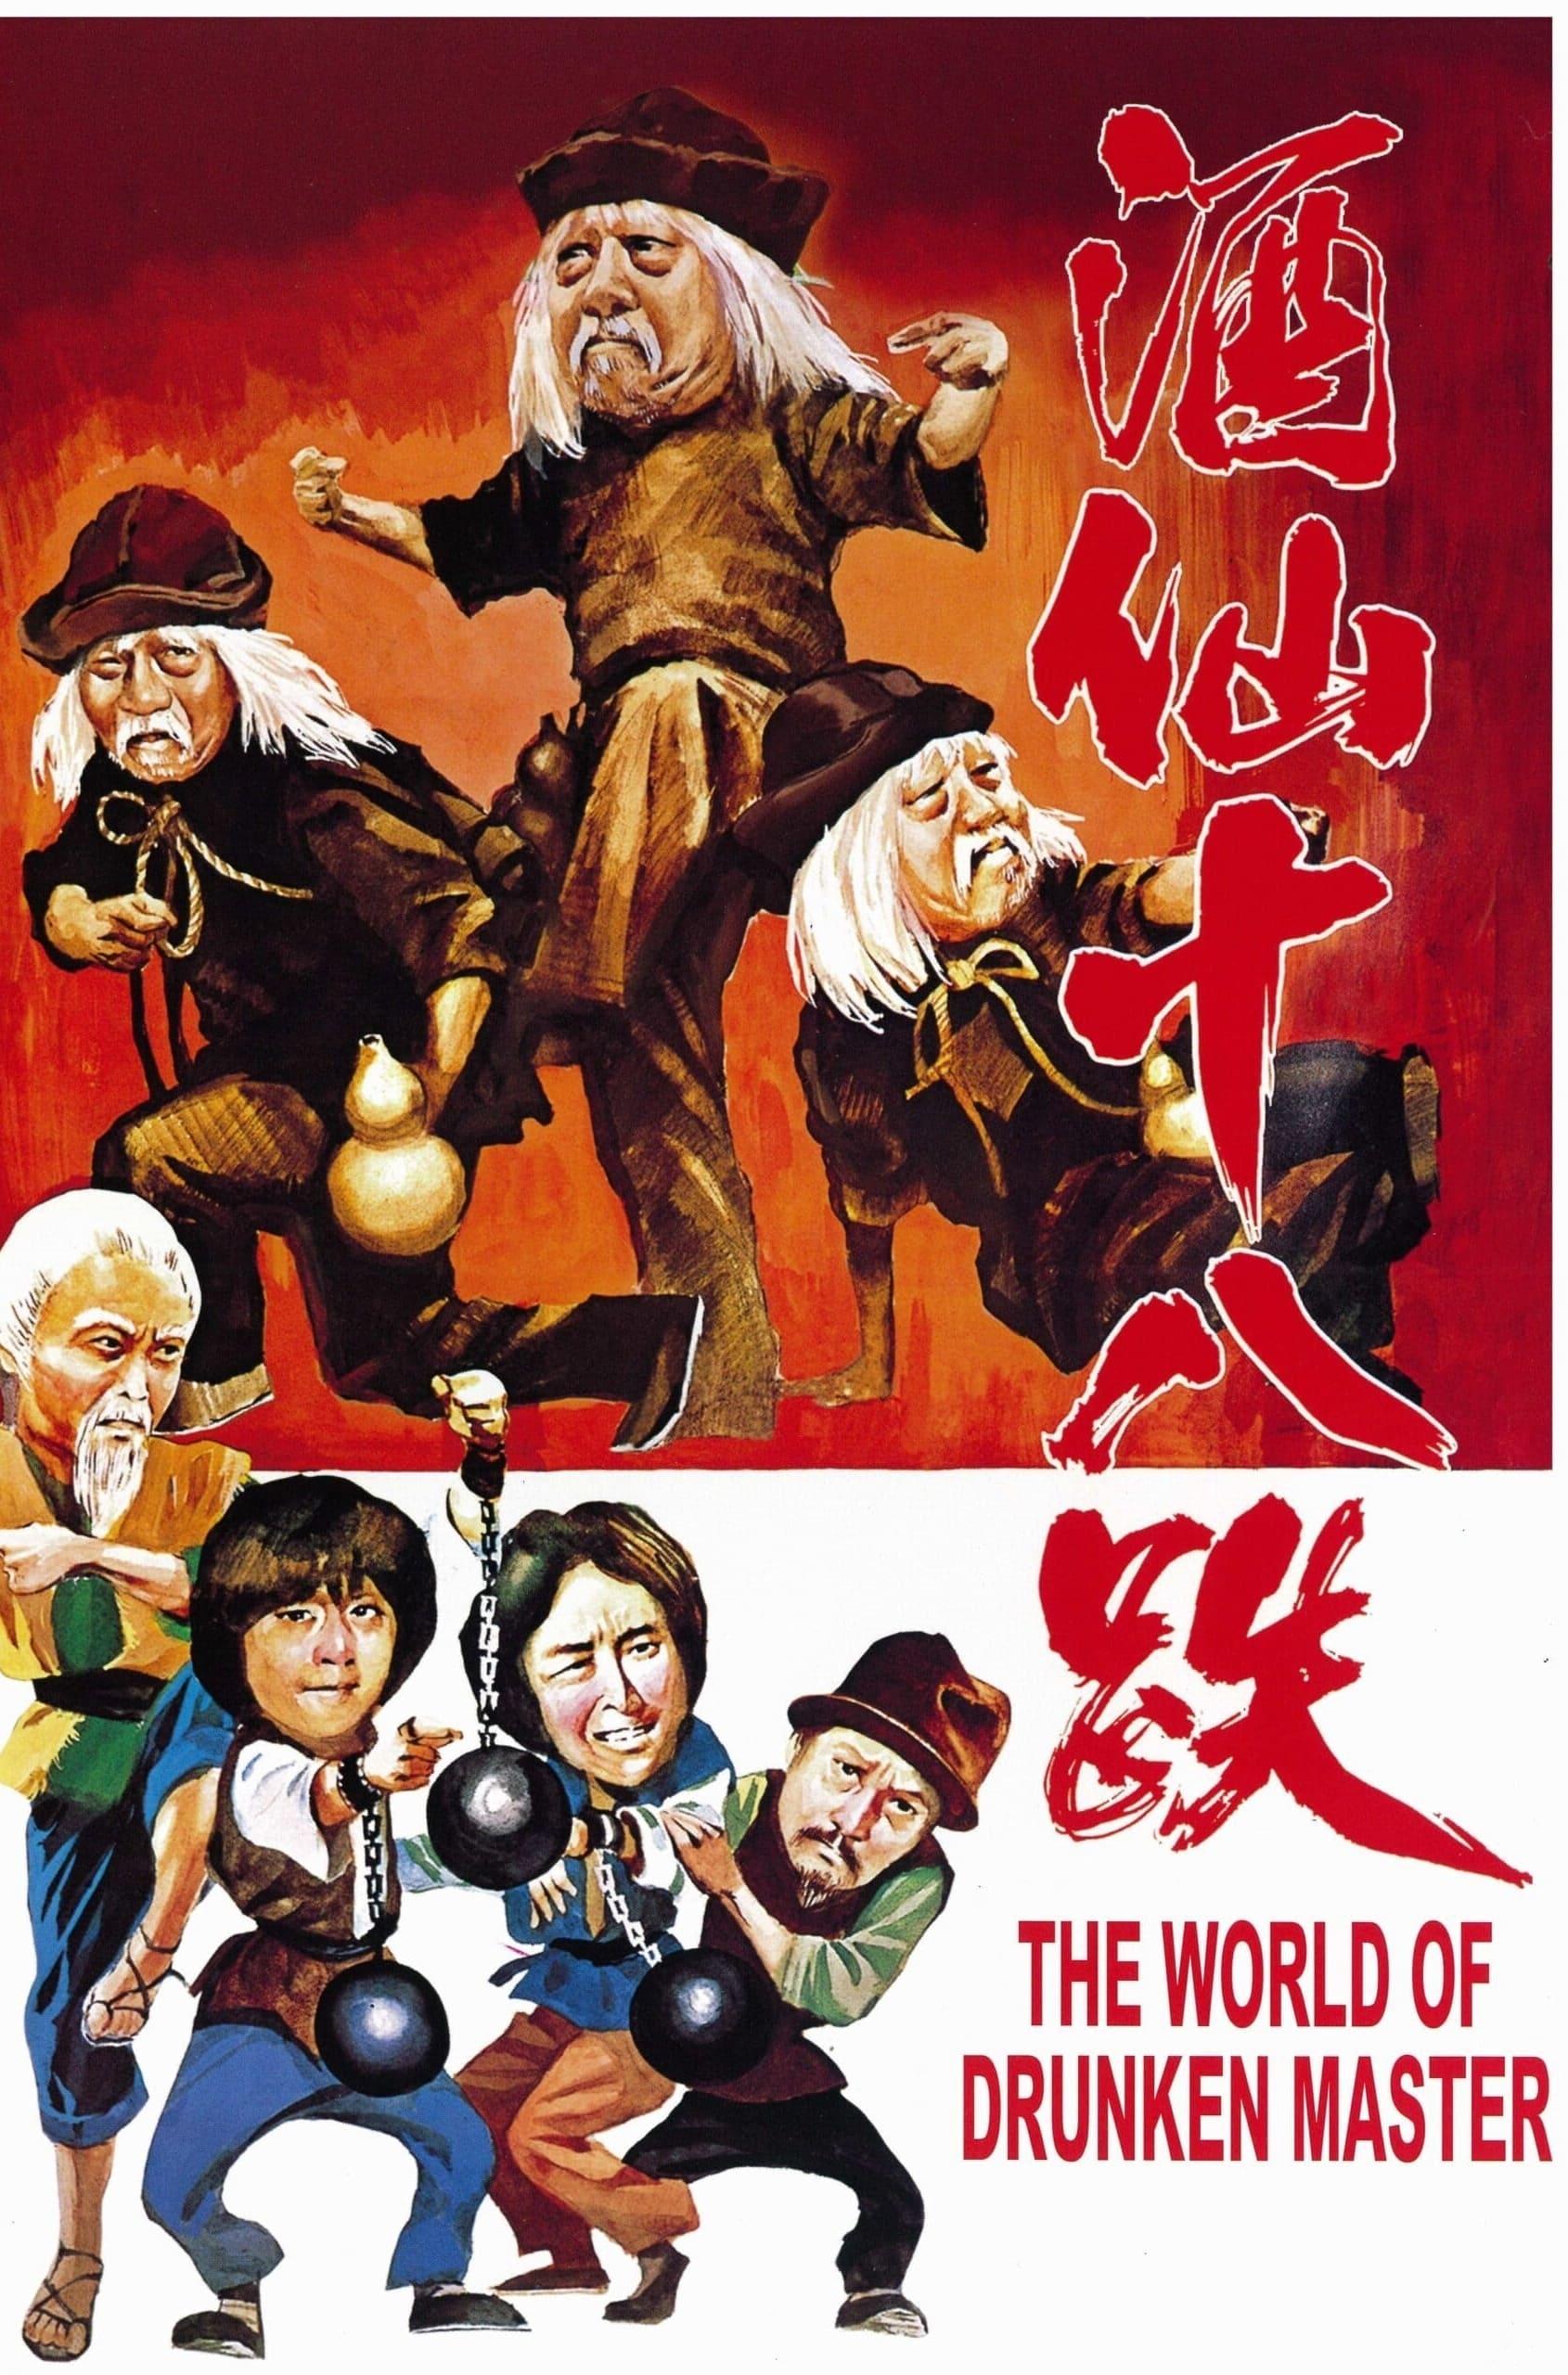 The World of Drunken Master poster